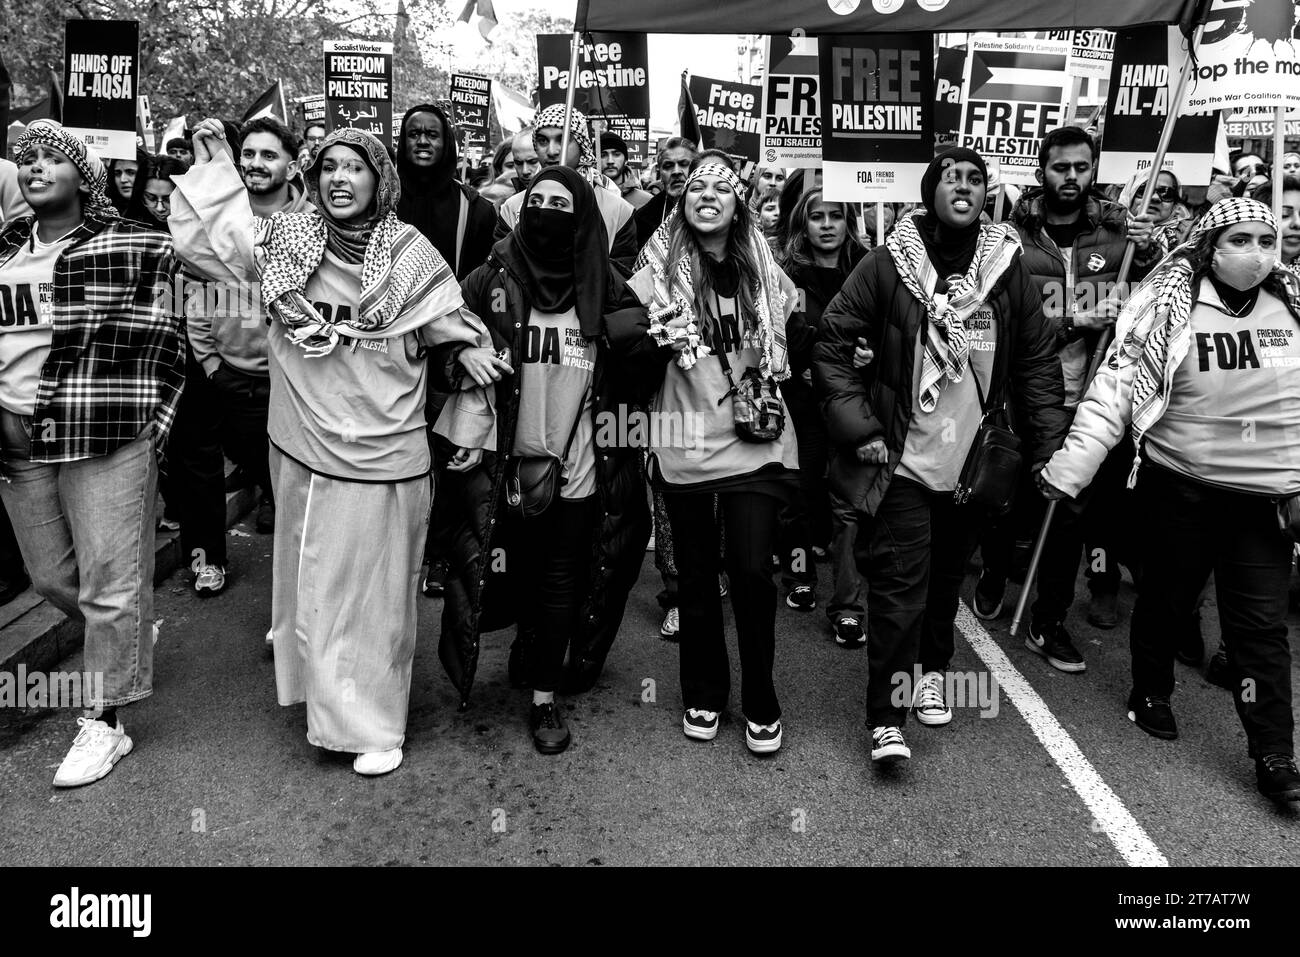 Jóvenes musulmanes británicos enojados piden Un alto el fuego en Gaza y que Israel detenga el bombardeo en el evento Marcha por Palestina, Londres, Reino Unido Foto de stock